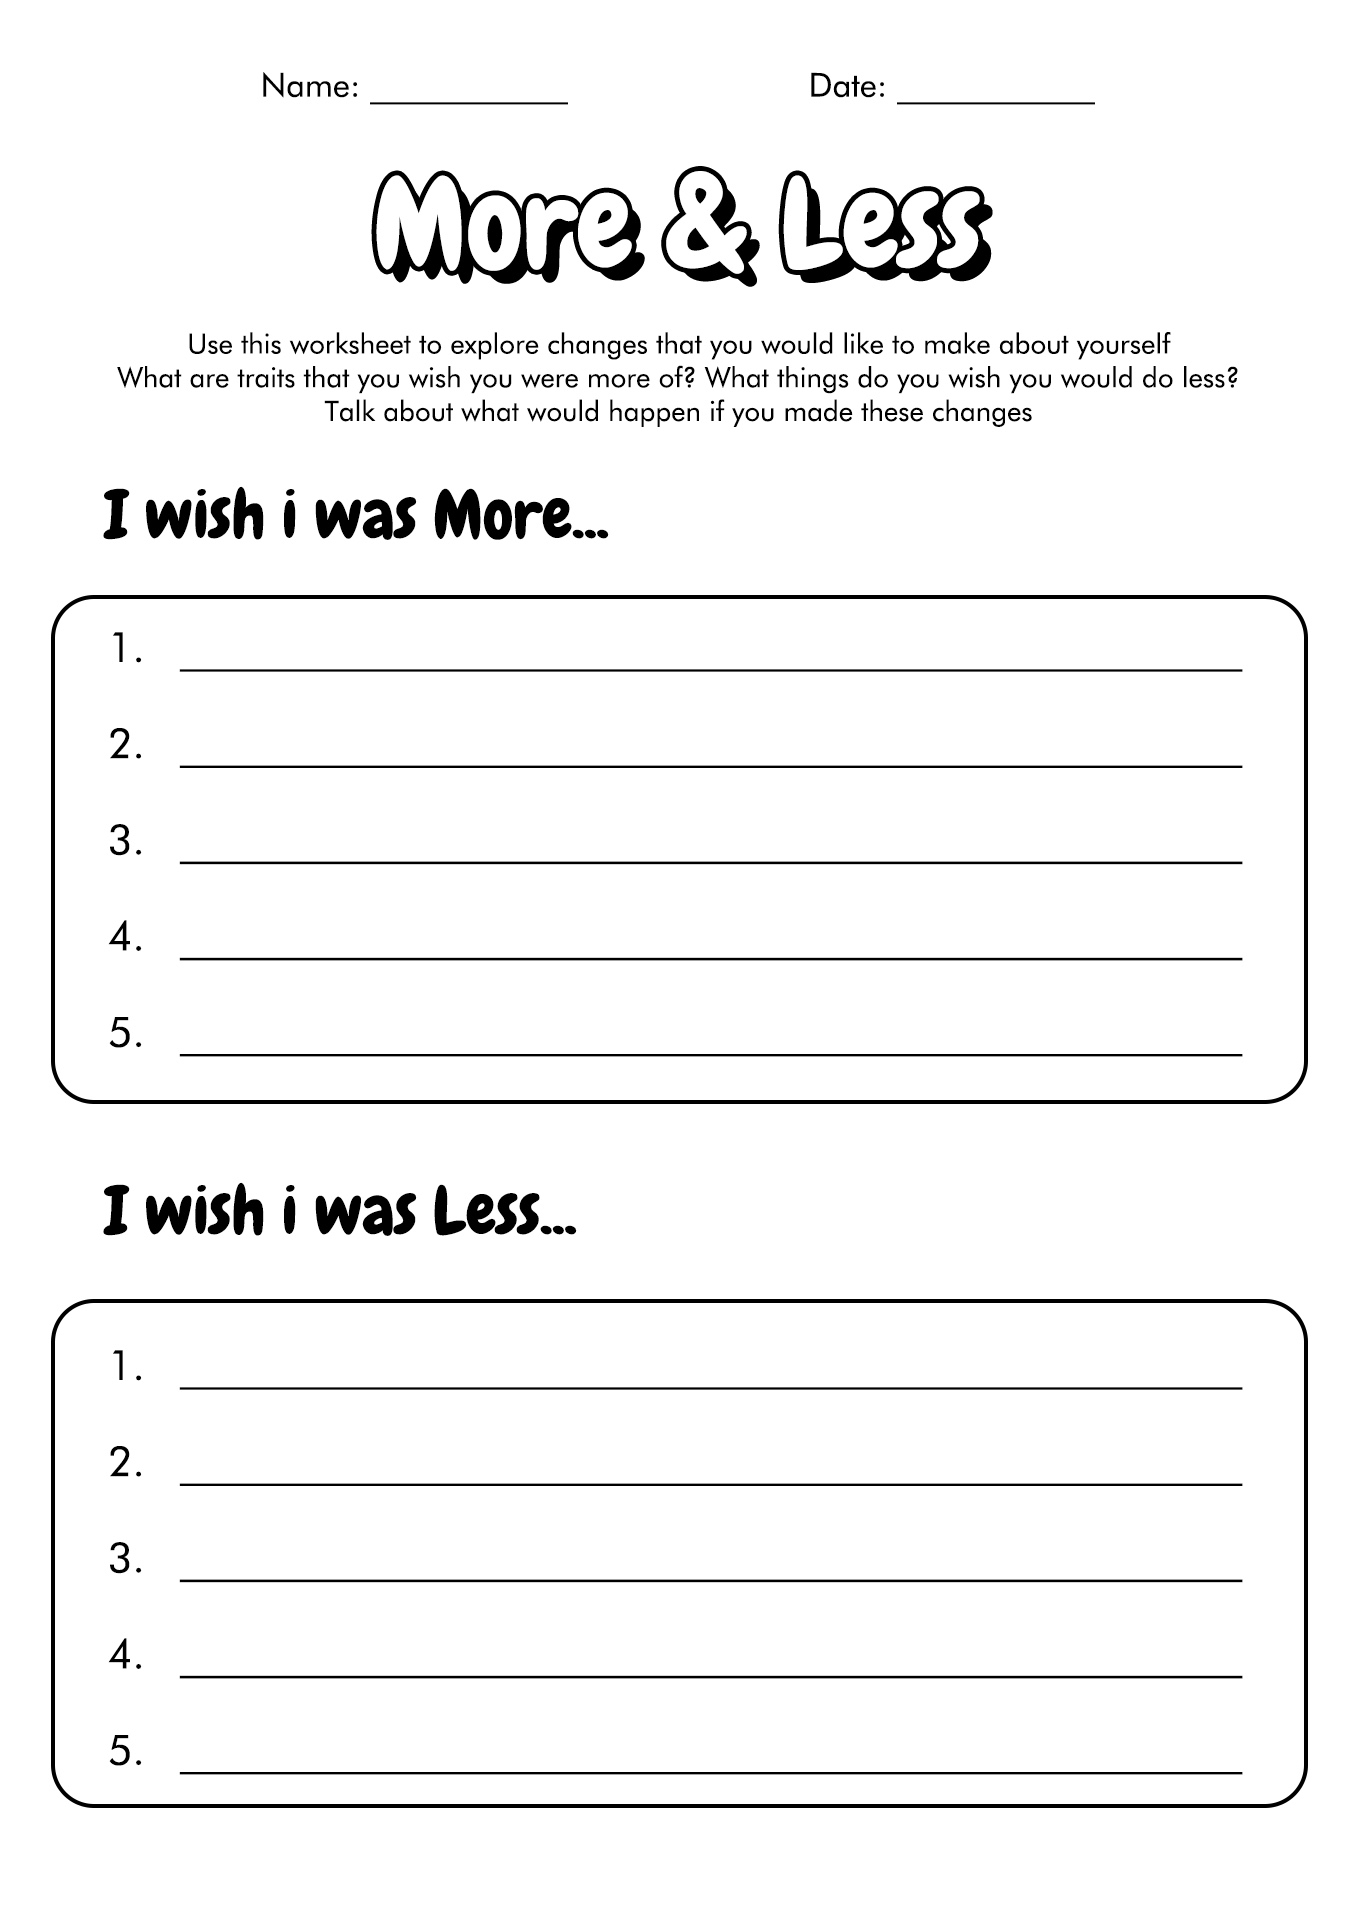 Activities for Teens Self-Esteem Worksheets Image